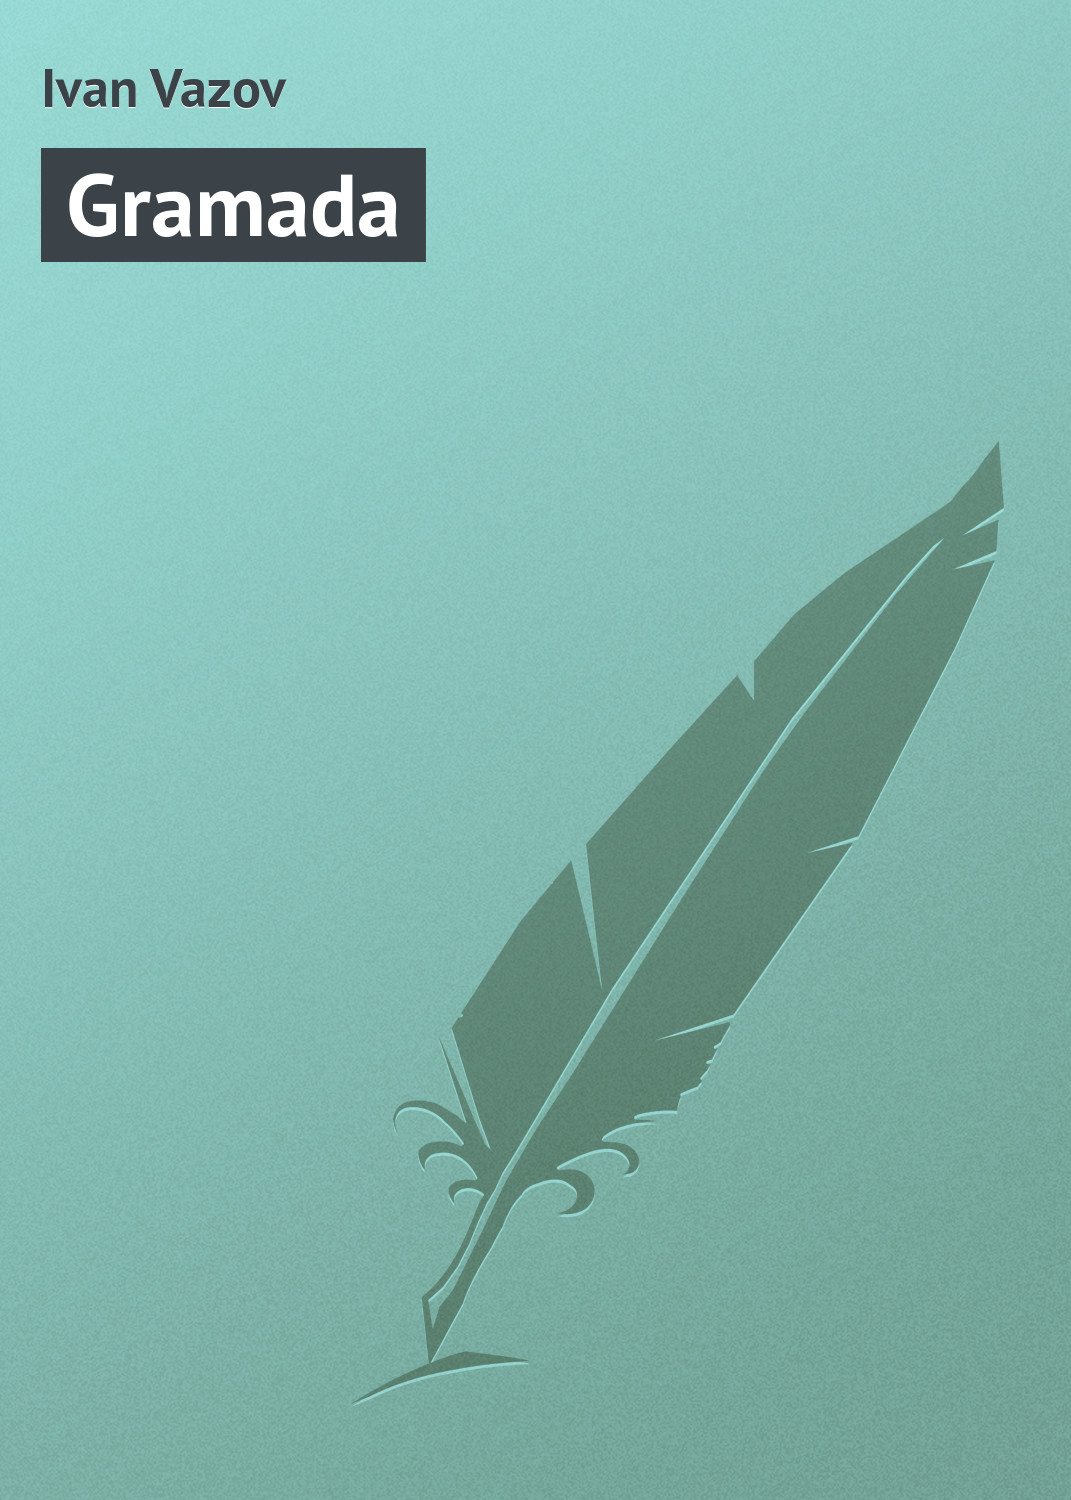 Книга Gramada из серии , созданная Ivan Vazov, может относится к жанру Зарубежная старинная литература, Зарубежная классика. Стоимость электронной книги Gramada с идентификатором 21106206 составляет 5.99 руб.